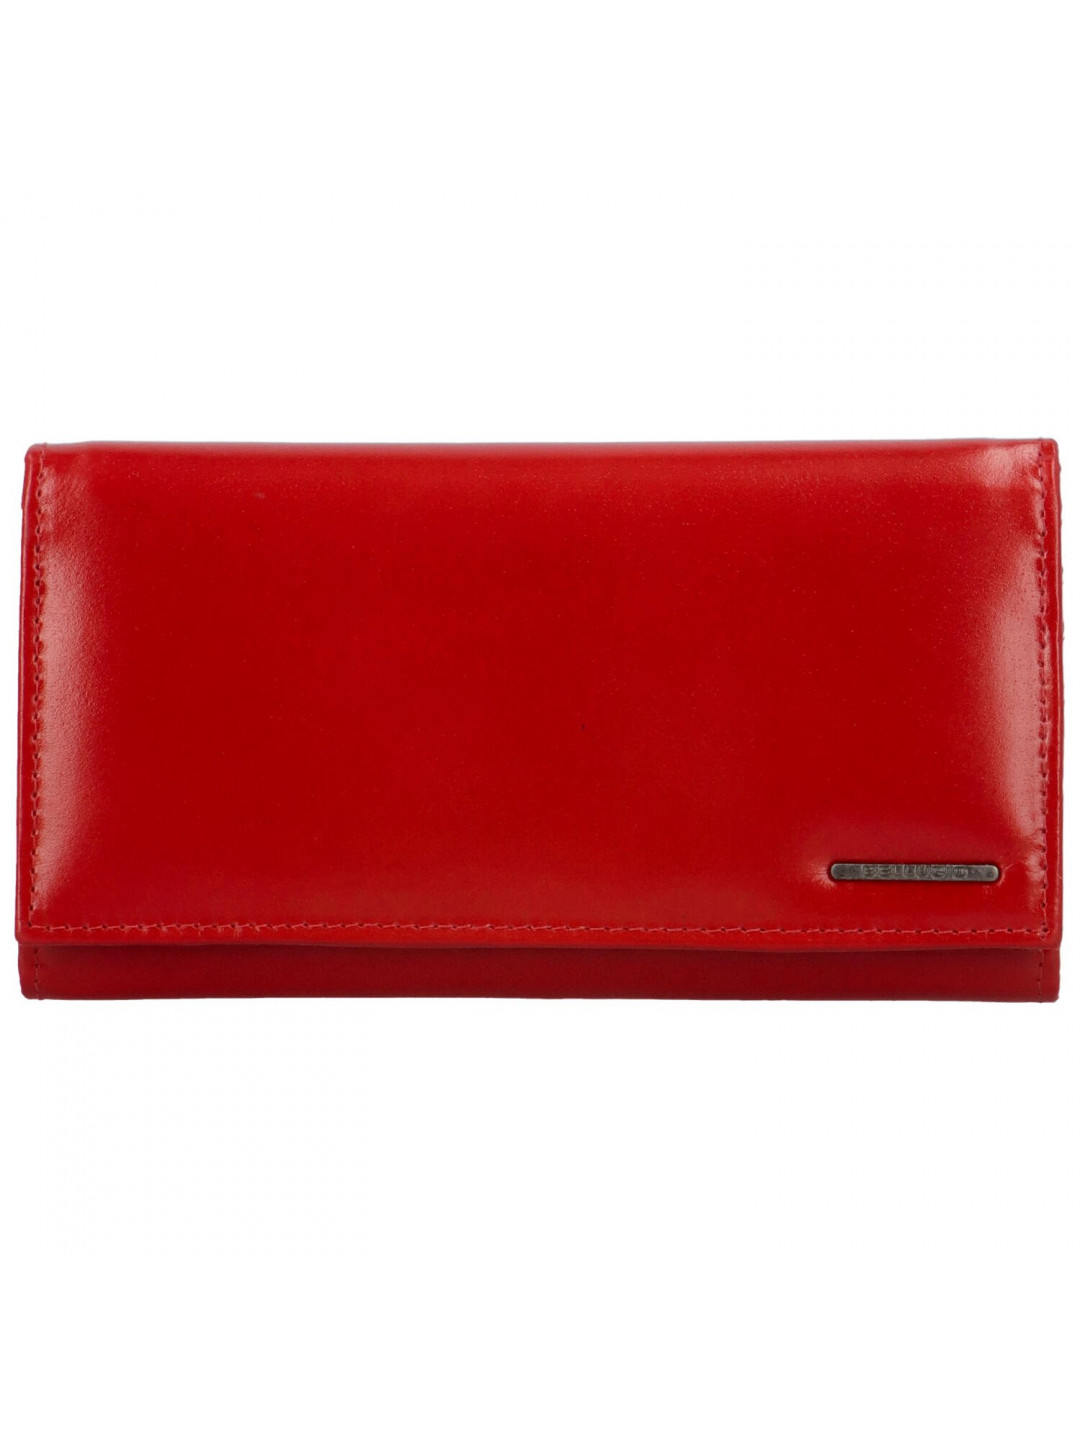 Trendy velká dámská peněženka Bellugio Kaprissa červená